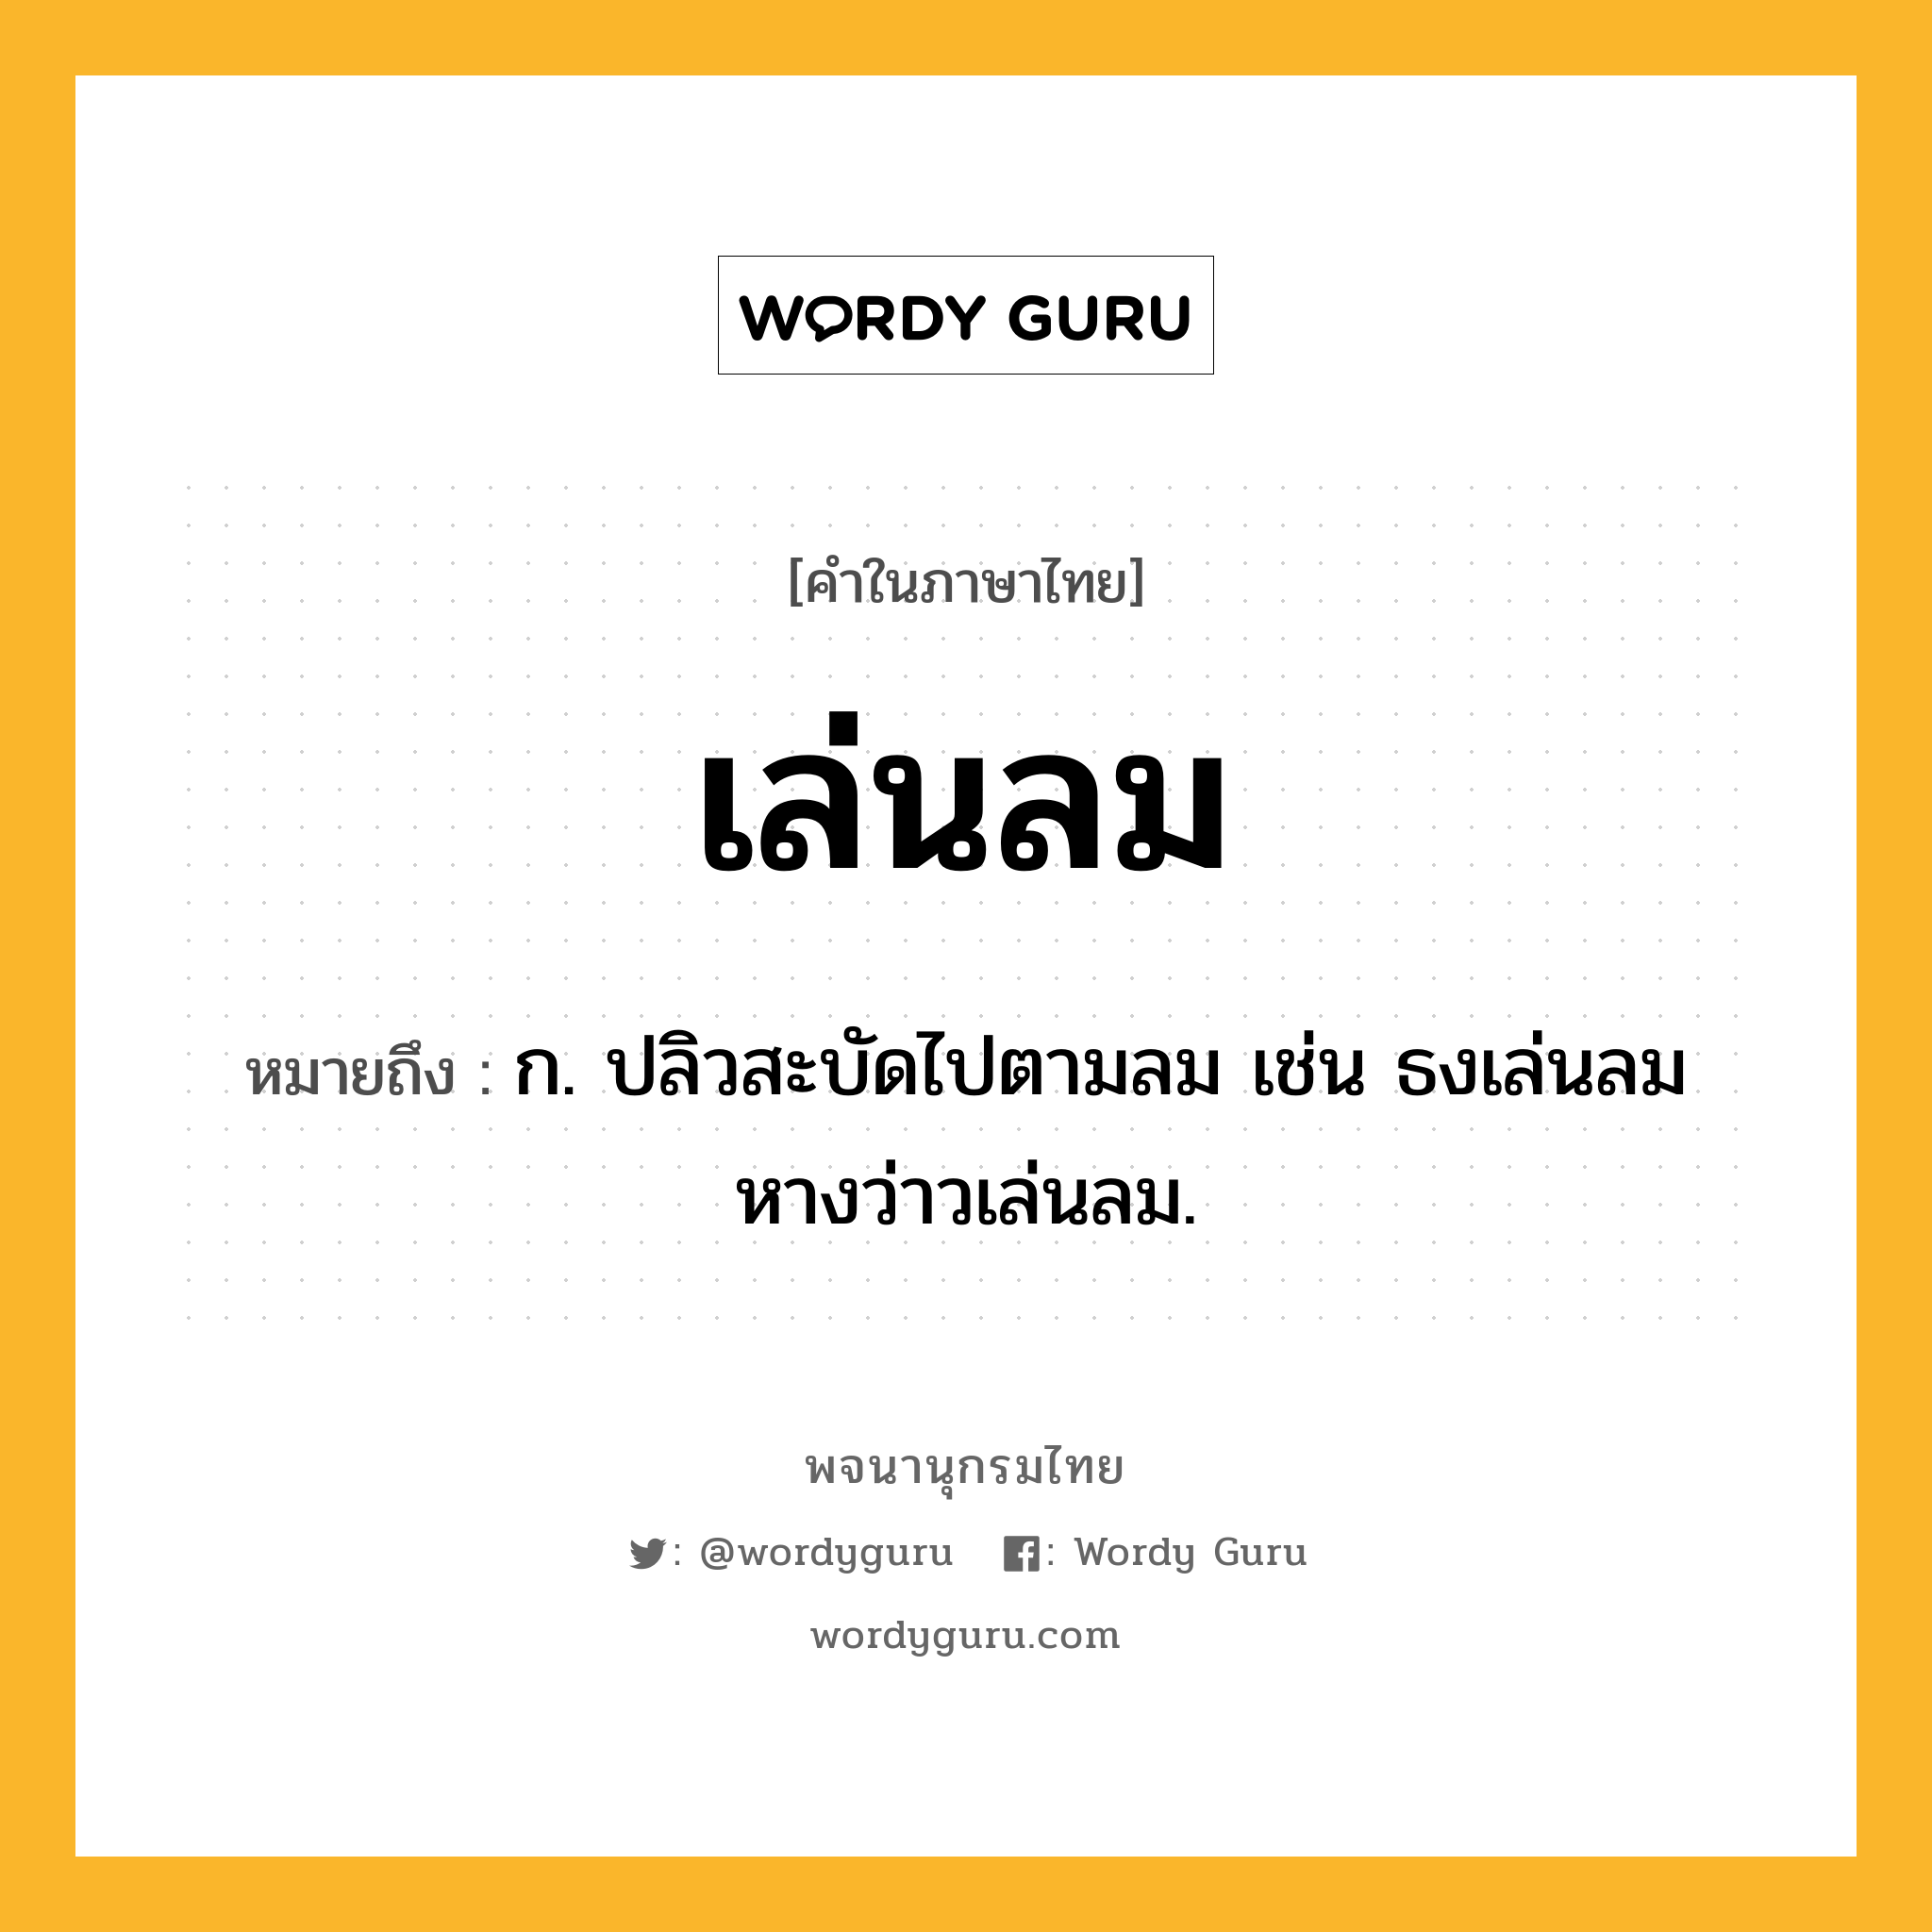 เล่นลม ความหมาย หมายถึงอะไร?, คำในภาษาไทย เล่นลม หมายถึง ก. ปลิวสะบัดไปตามลม เช่น ธงเล่นลม หางว่าวเล่นลม.